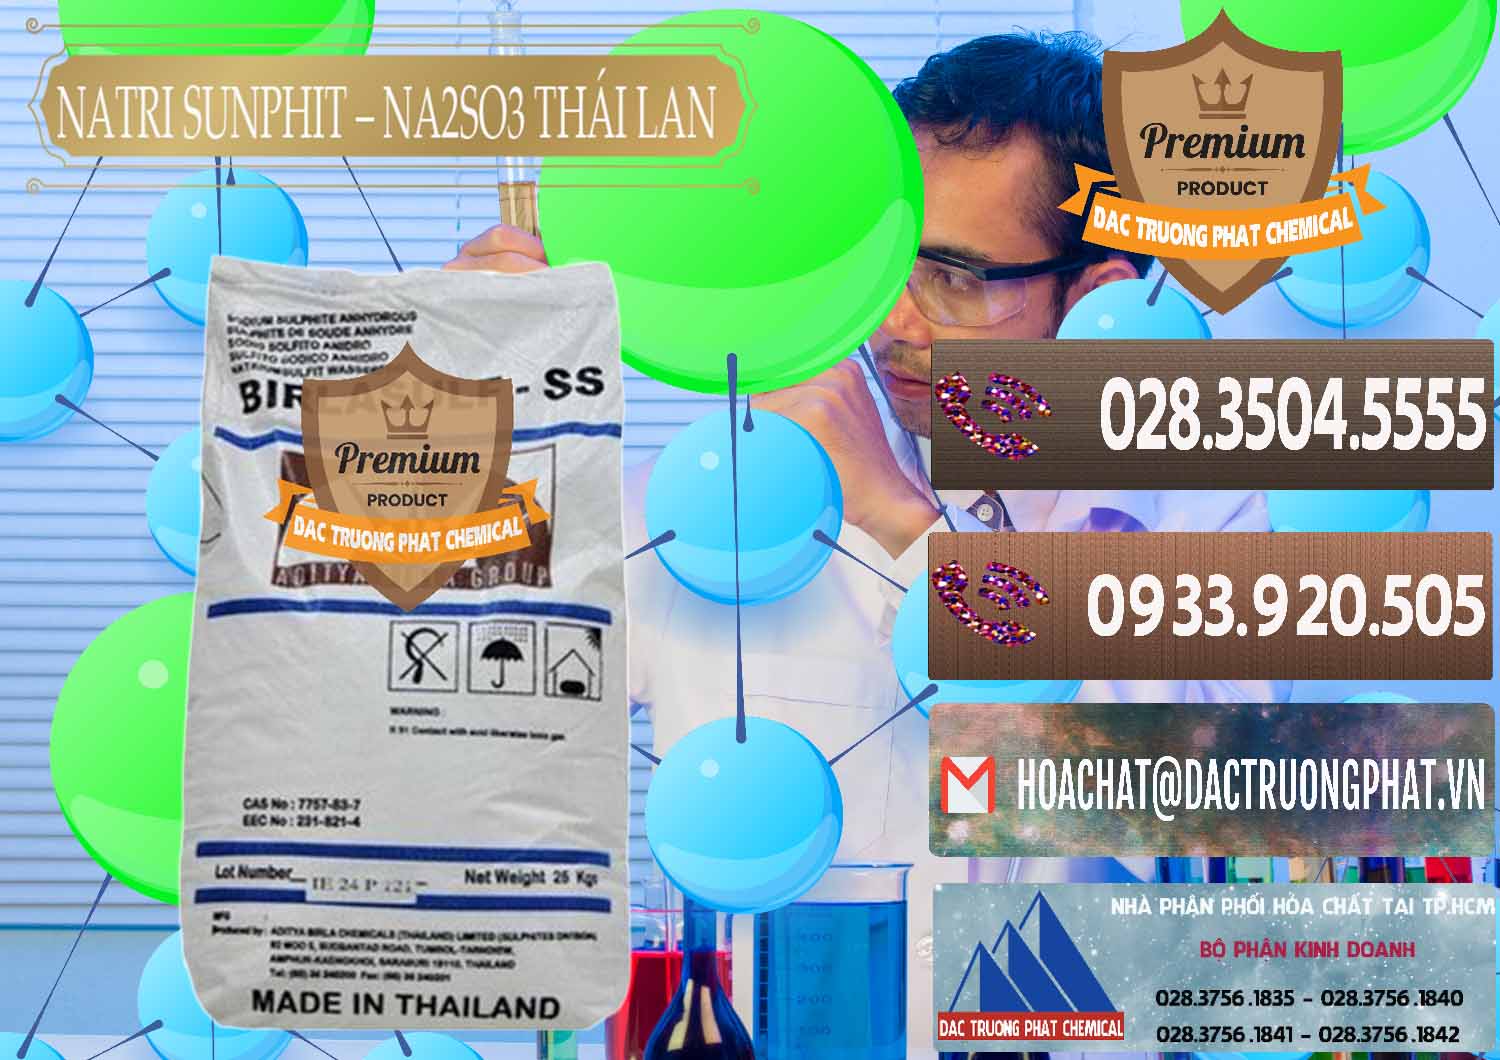 Nơi chuyên bán _ cung cấp Natri Sunphit - NA2SO3 Thái Lan - 0105 - Nơi phân phối - cung cấp hóa chất tại TP.HCM - hoachatviet.net